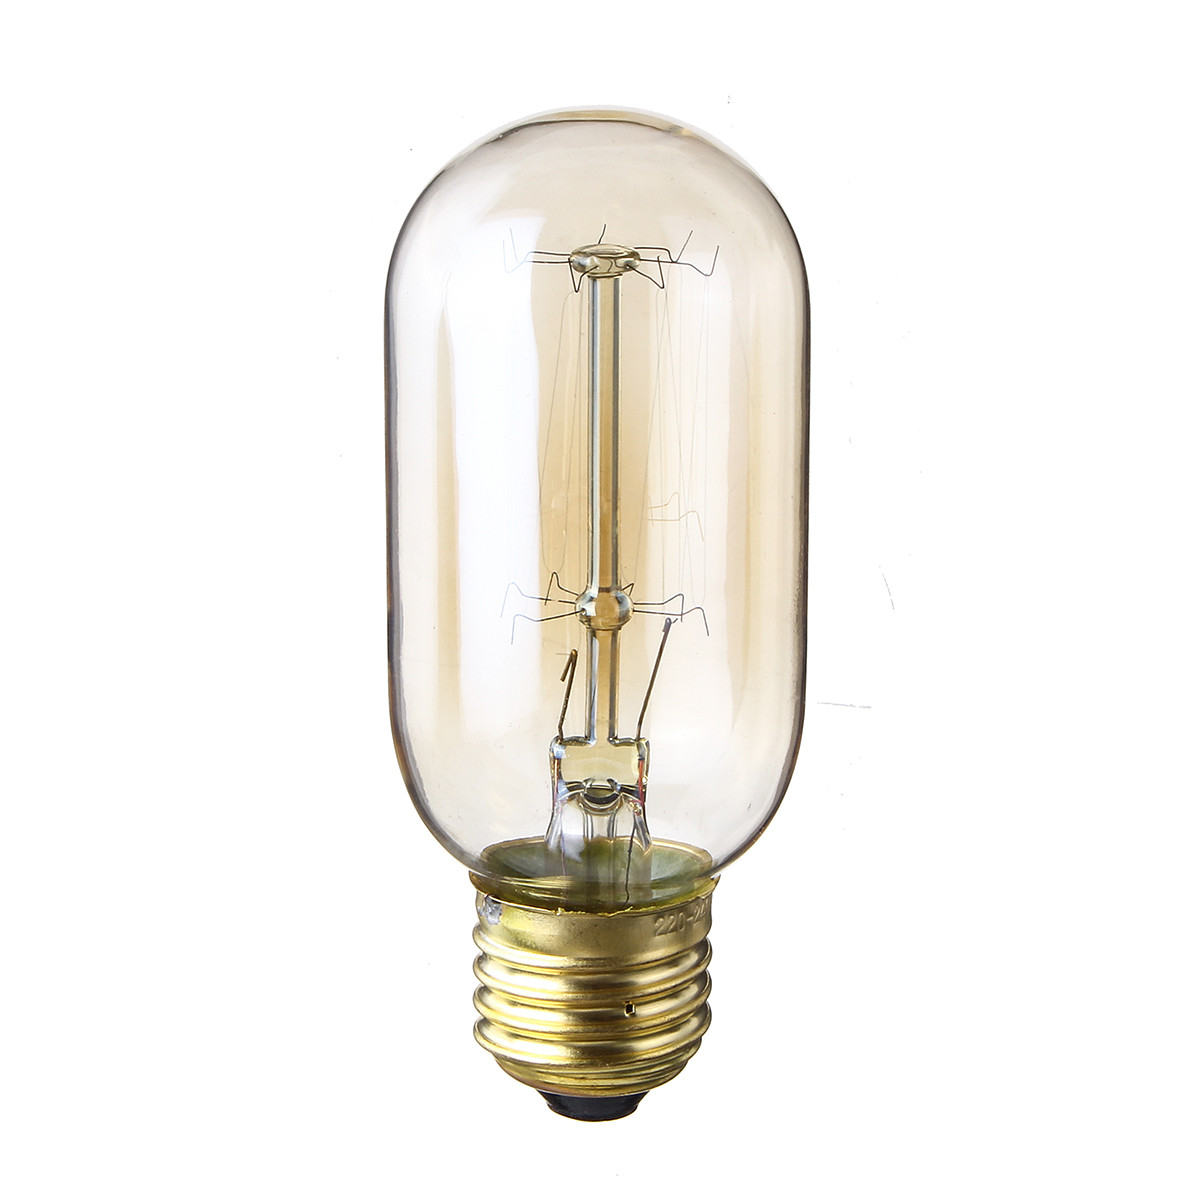 Лампочка ретро-стиля 40 ватт, ретро лампа накаливания, винтажная лампа, старинная лампа.